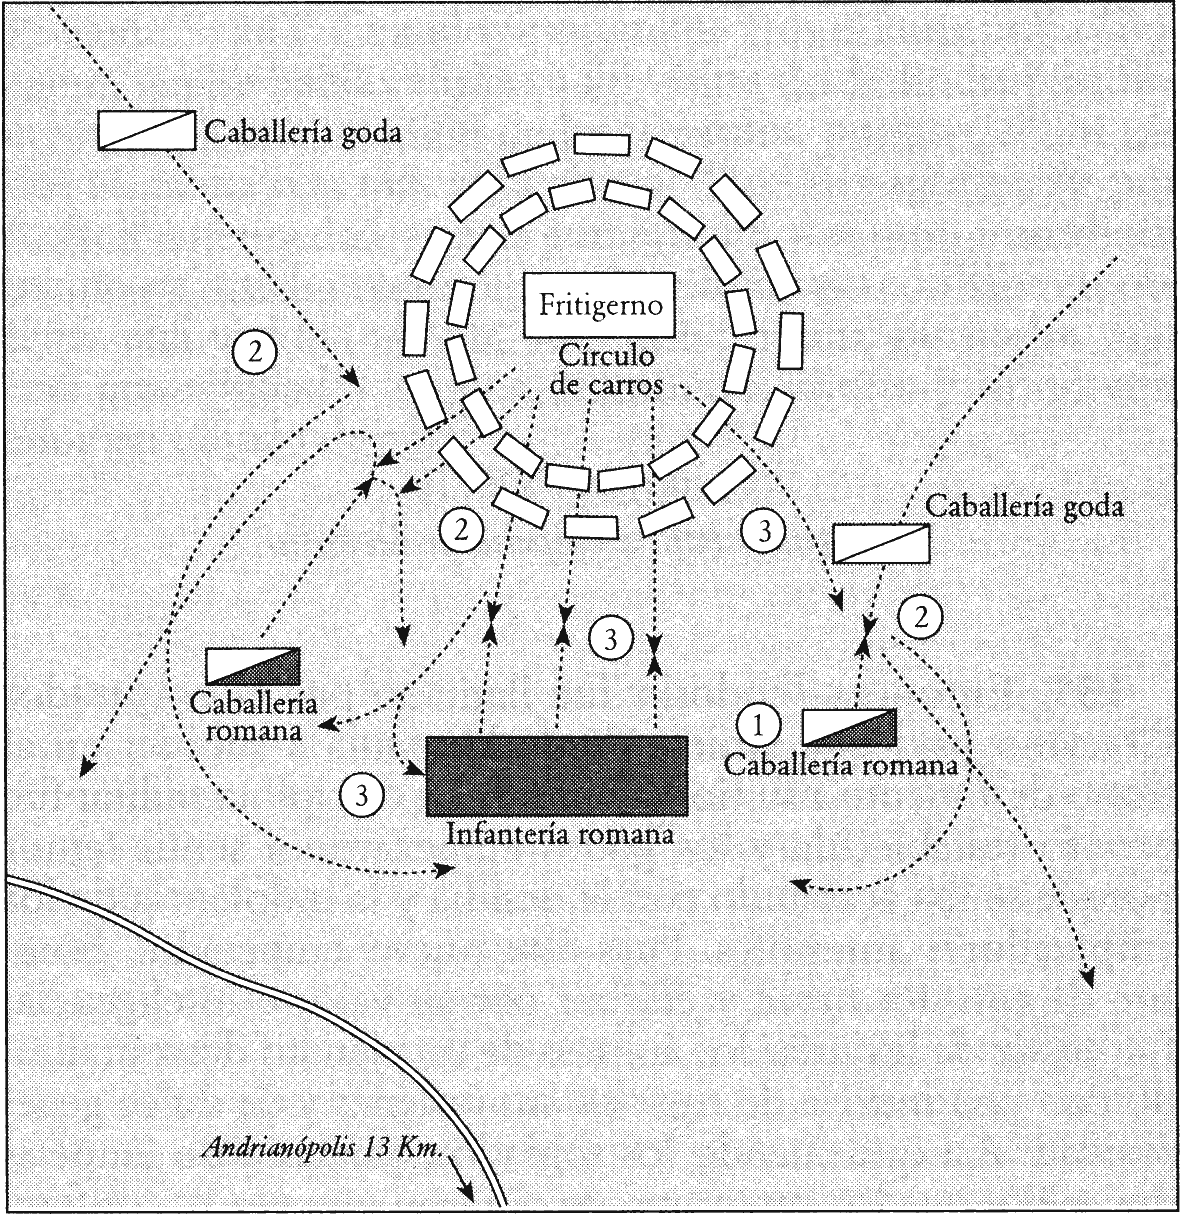 Adrianopolio planas